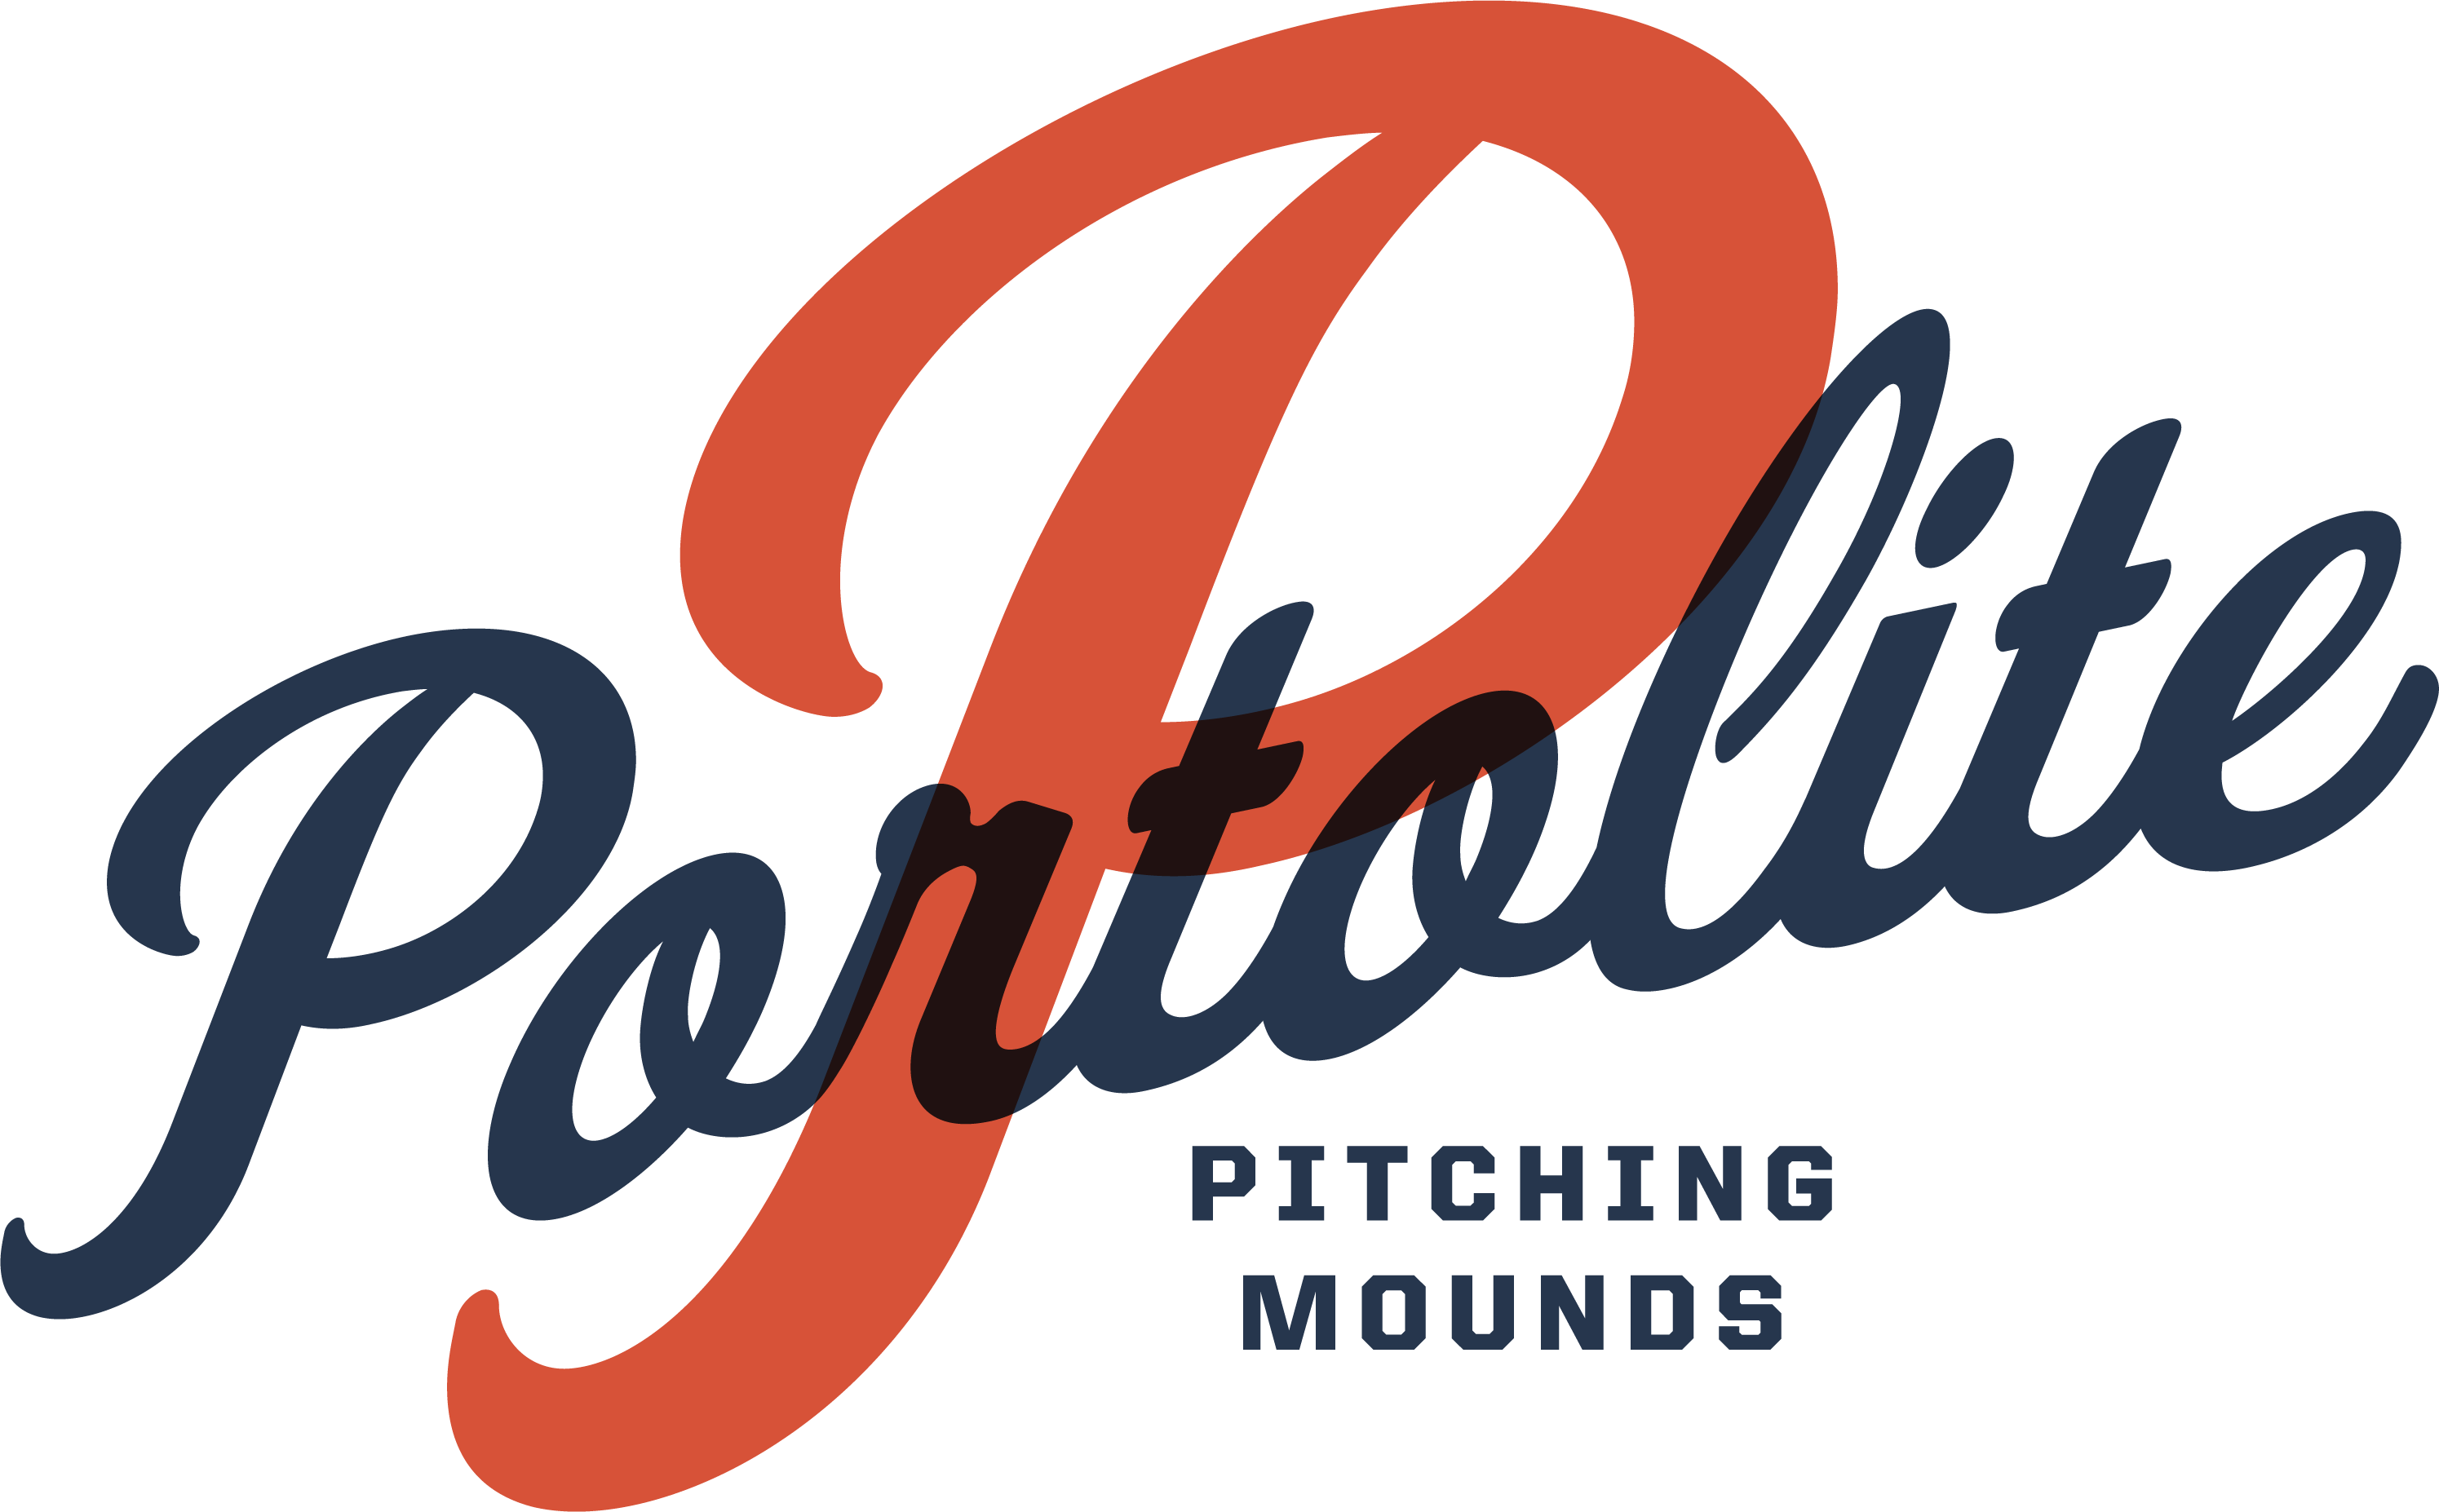 Visit Portolite Pitching Mounds